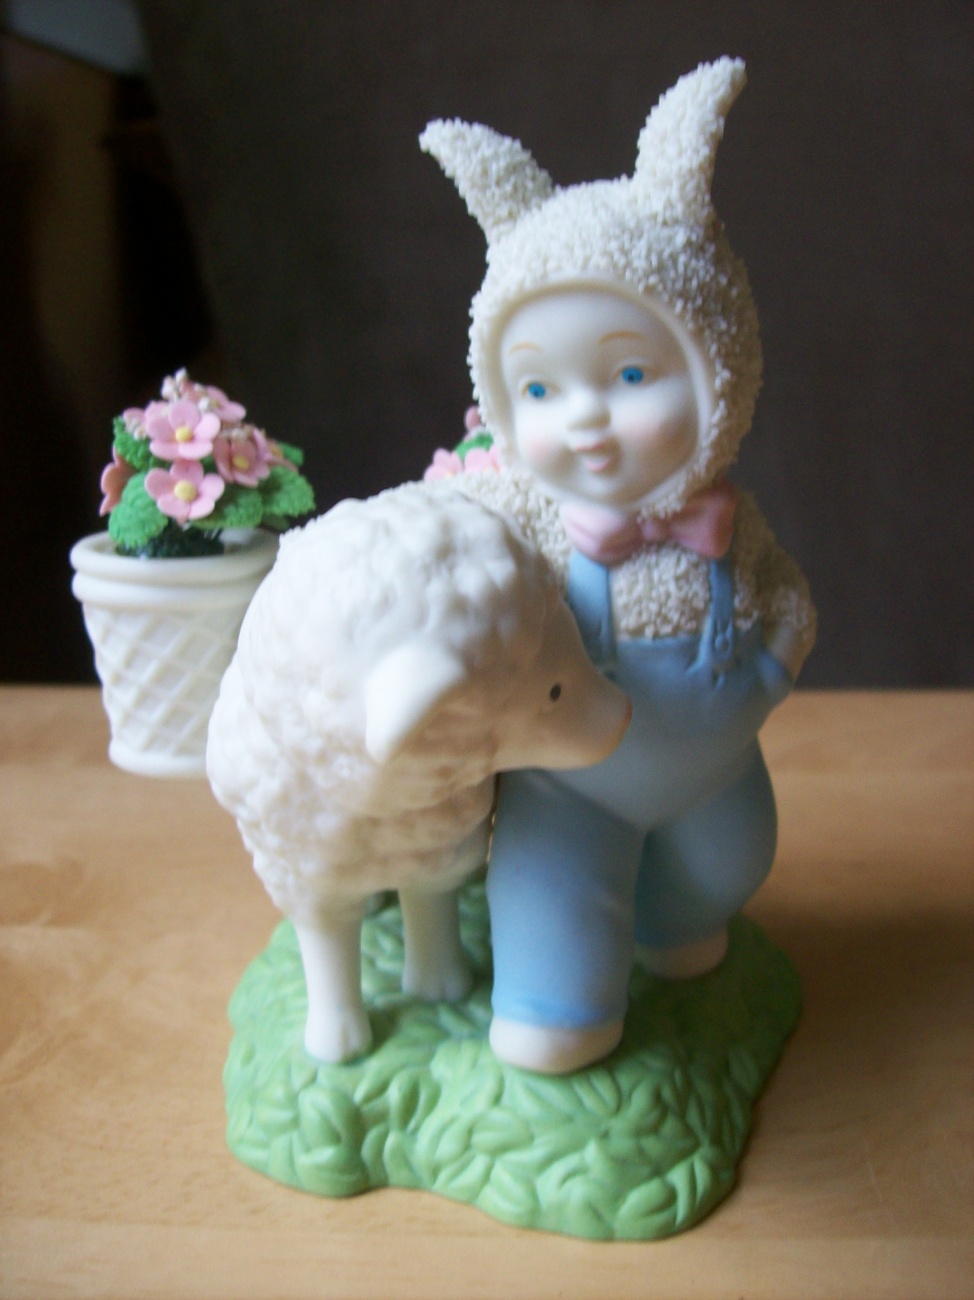 Dept. 56 2002 Snowbabies “Bunny’s Best Friend” Figurine - $35.00